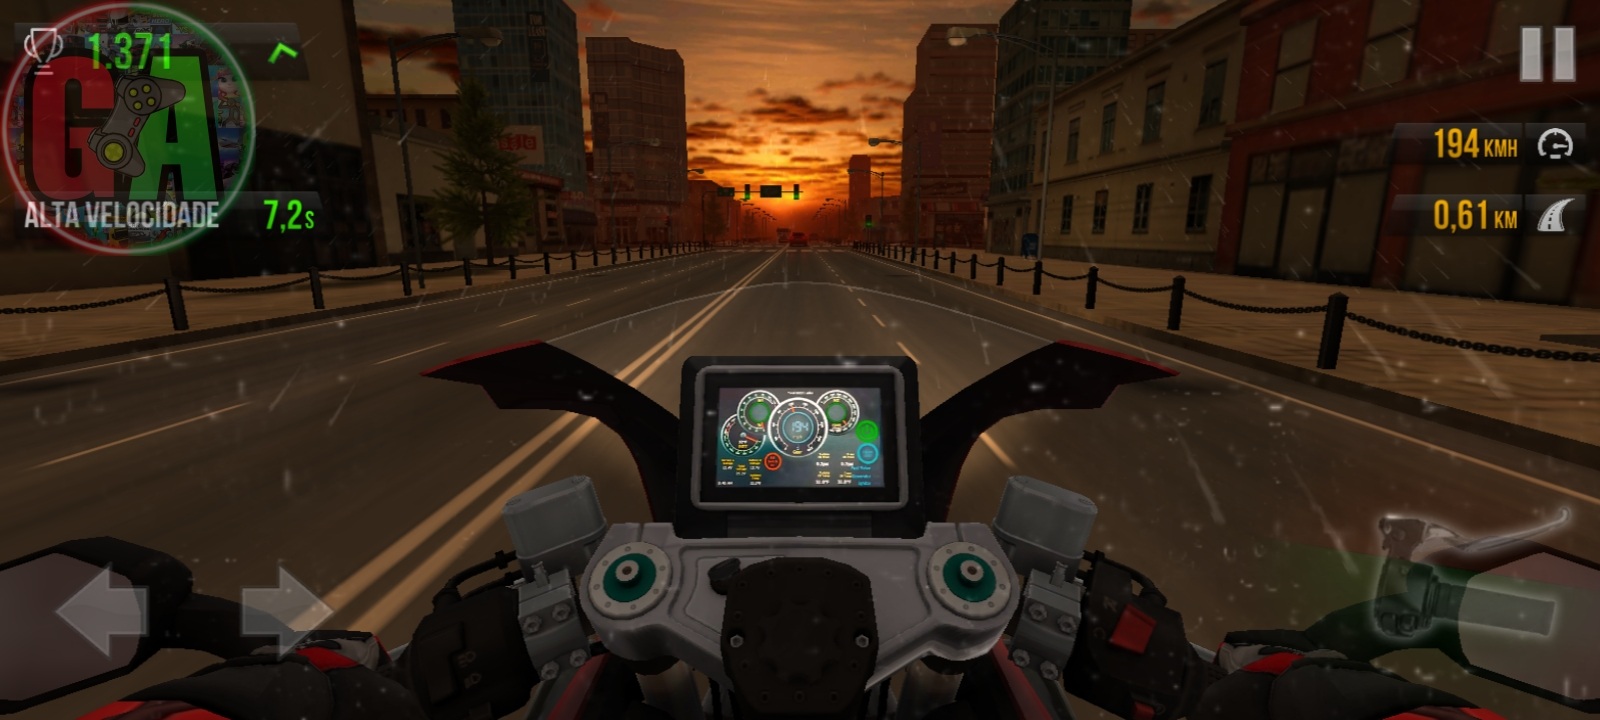 Traffic Rider Apk Mod Dinheiro Infinito v1.98 - Goku Play Games